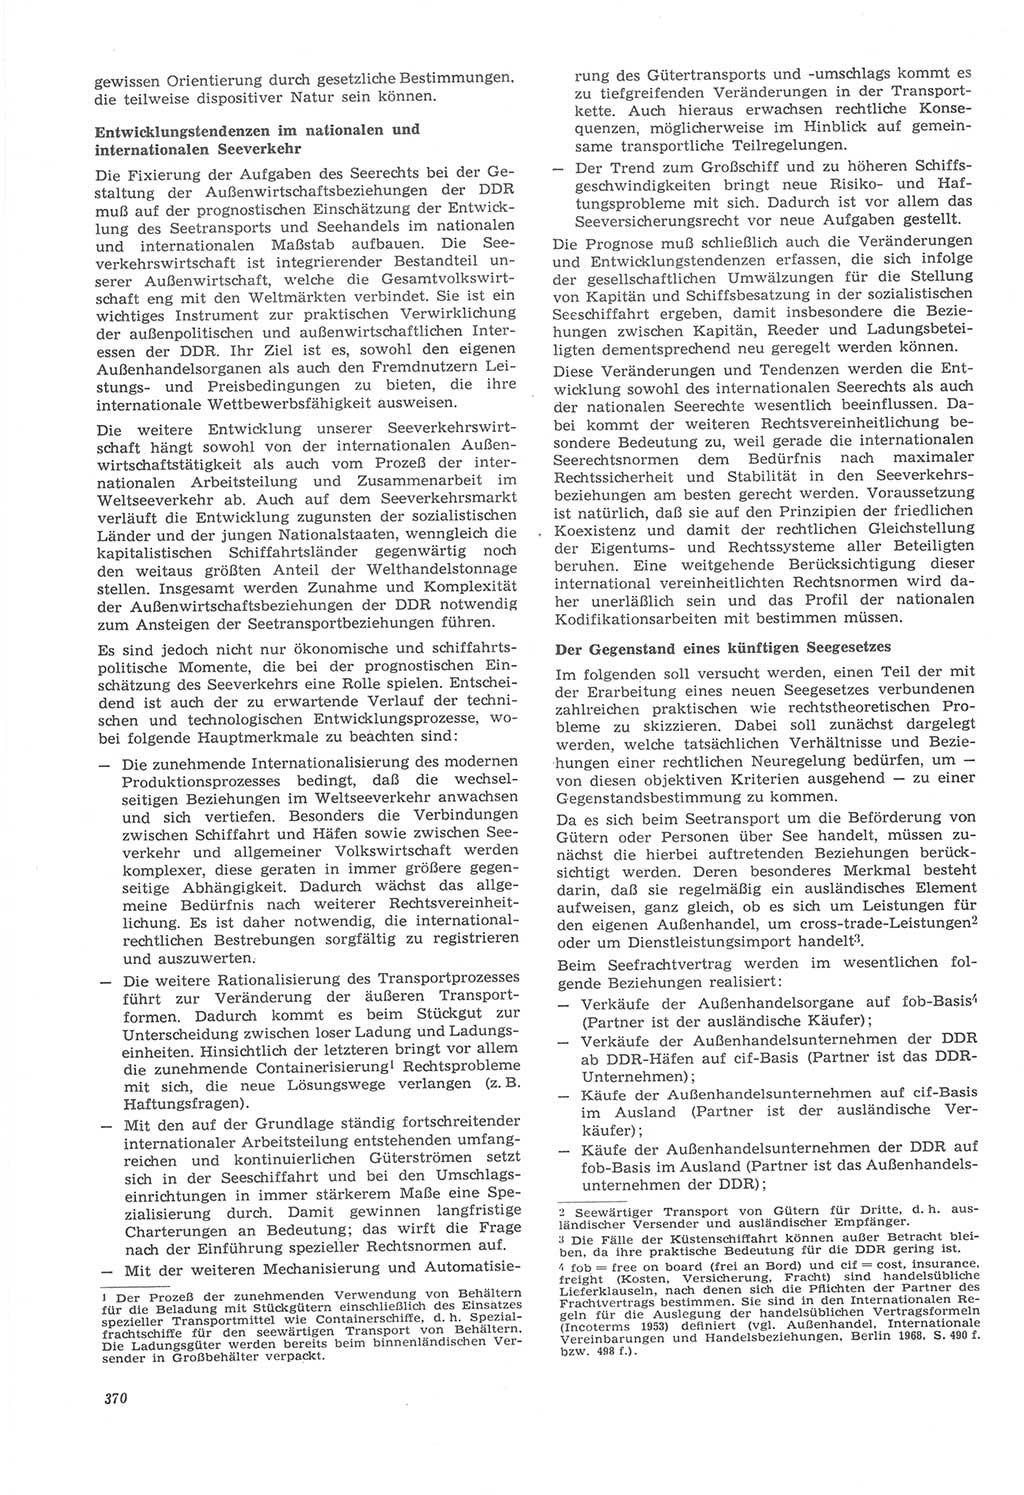 Neue Justiz (NJ), Zeitschrift für Recht und Rechtswissenschaft [Deutsche Demokratische Republik (DDR)], 22. Jahrgang 1968, Seite 370 (NJ DDR 1968, S. 370)